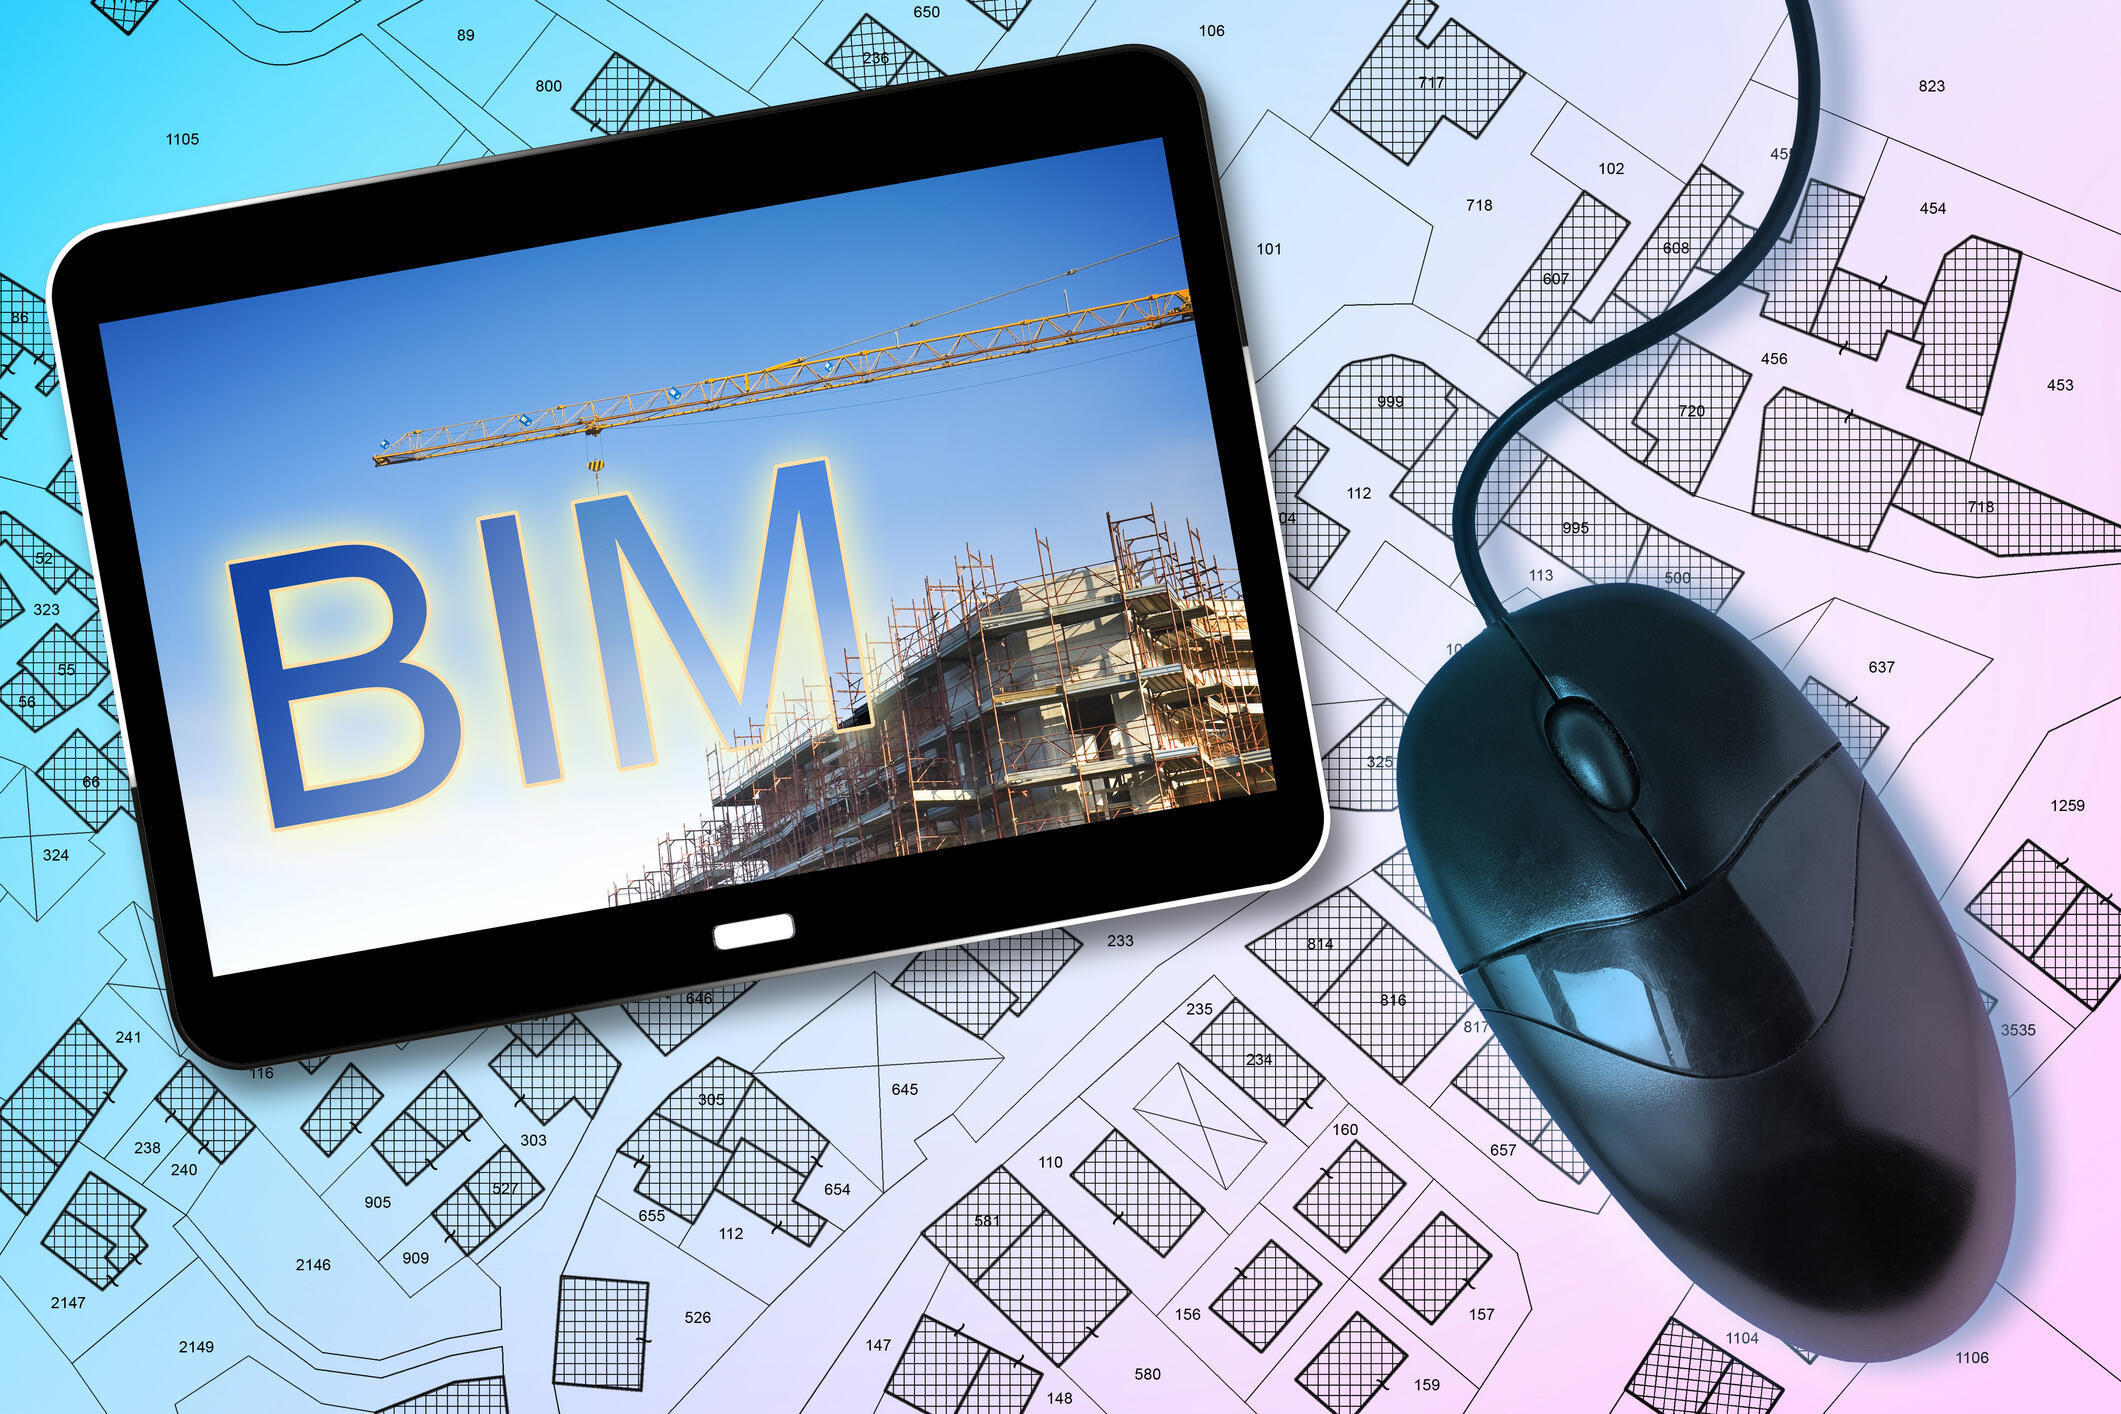 Auf einem Papier-Bauplan liegen eine Computer-Maus und ein Tablet. Auf dem Display ist das Wort BIM sowie eine Baustelle mit Kran zu sehen.